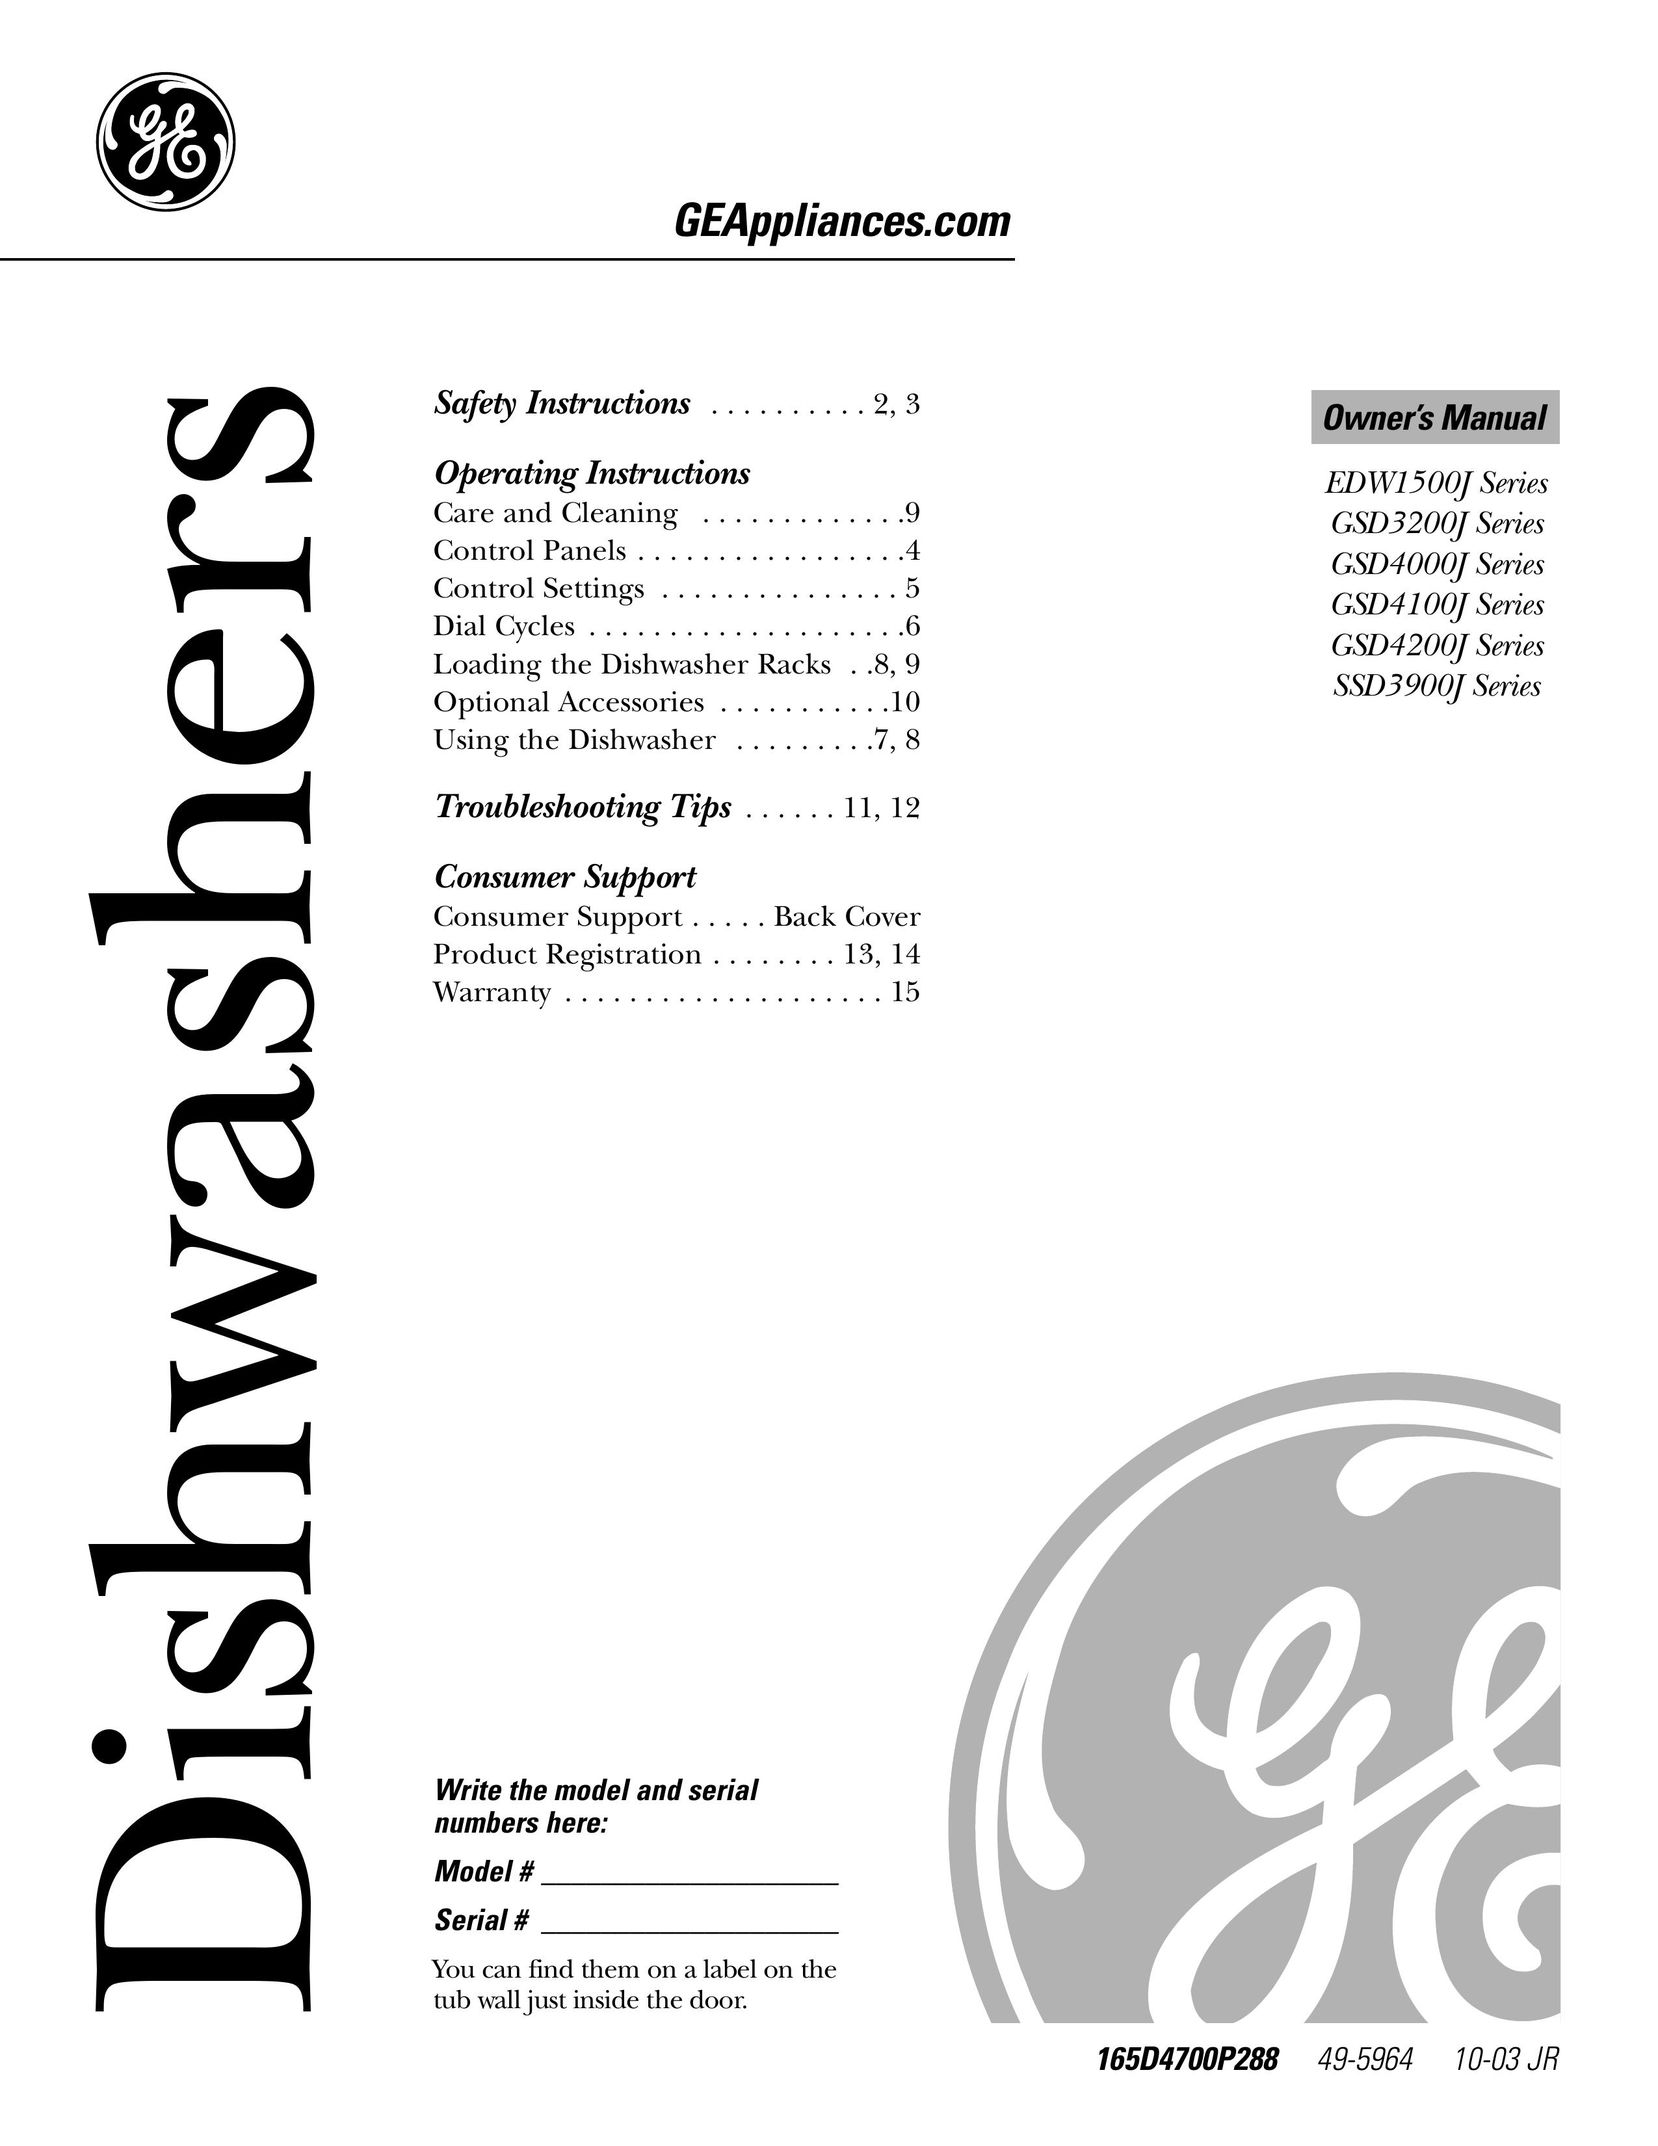 GE EDW1500J Dishwasher User Manual